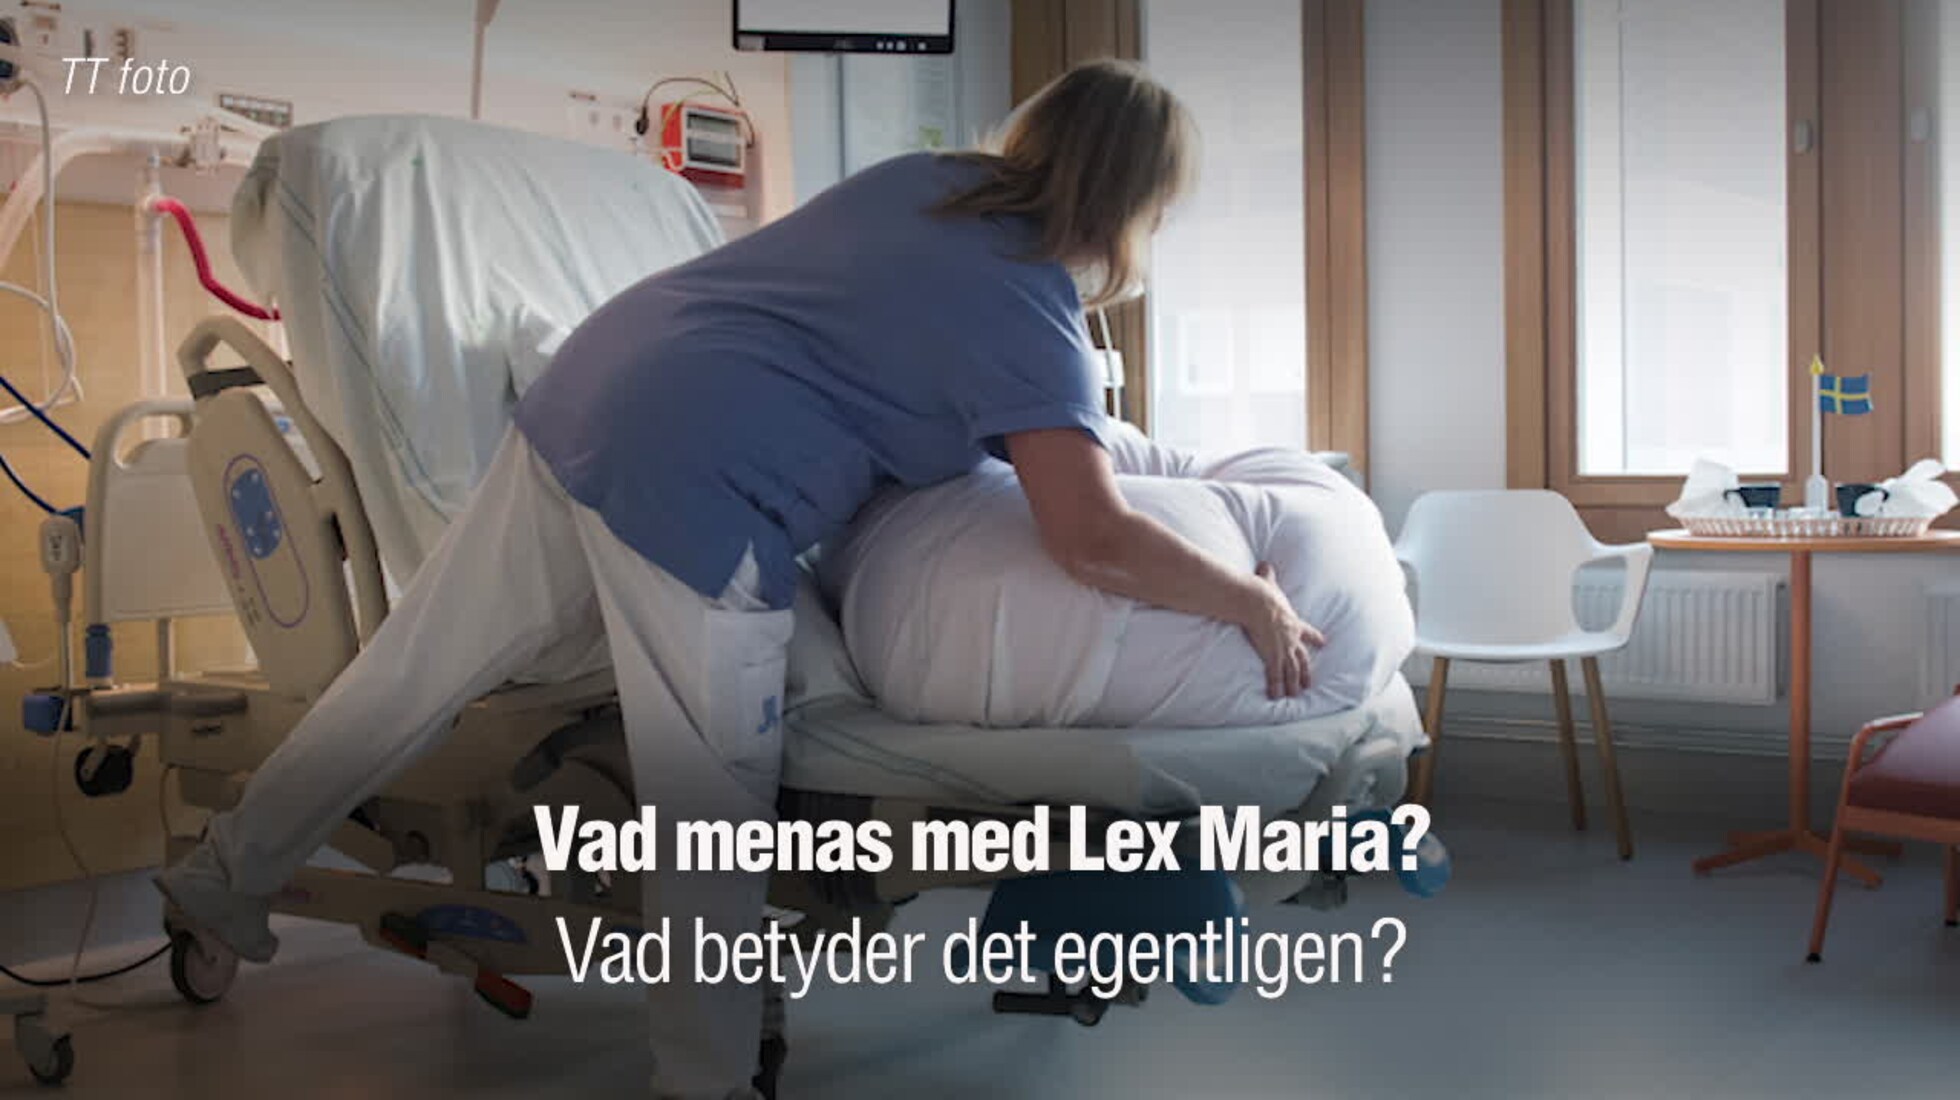 Vad innebär ”Lex Maria”? | Aftonbladet